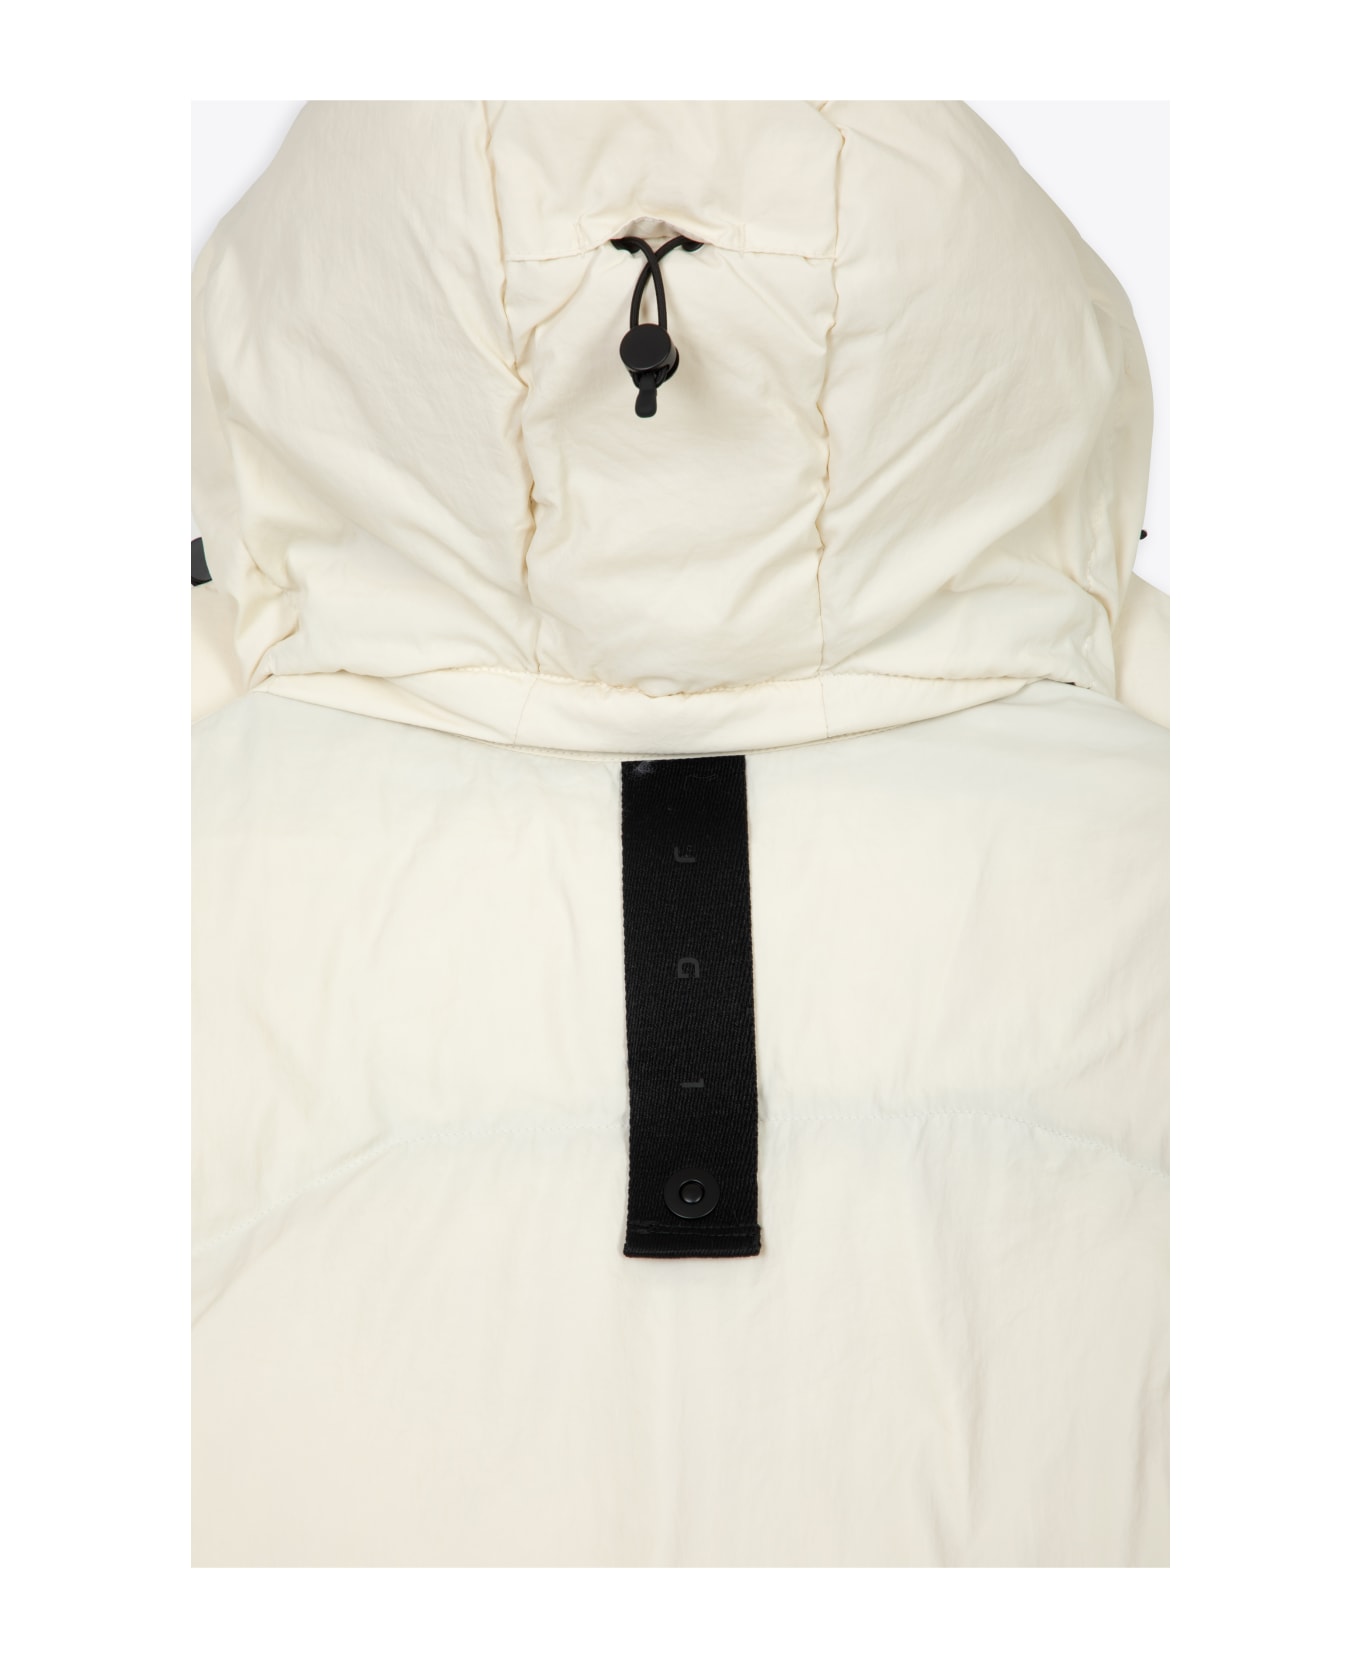 JG1 Perla Off white nylon hooded puffer jacket - Perla